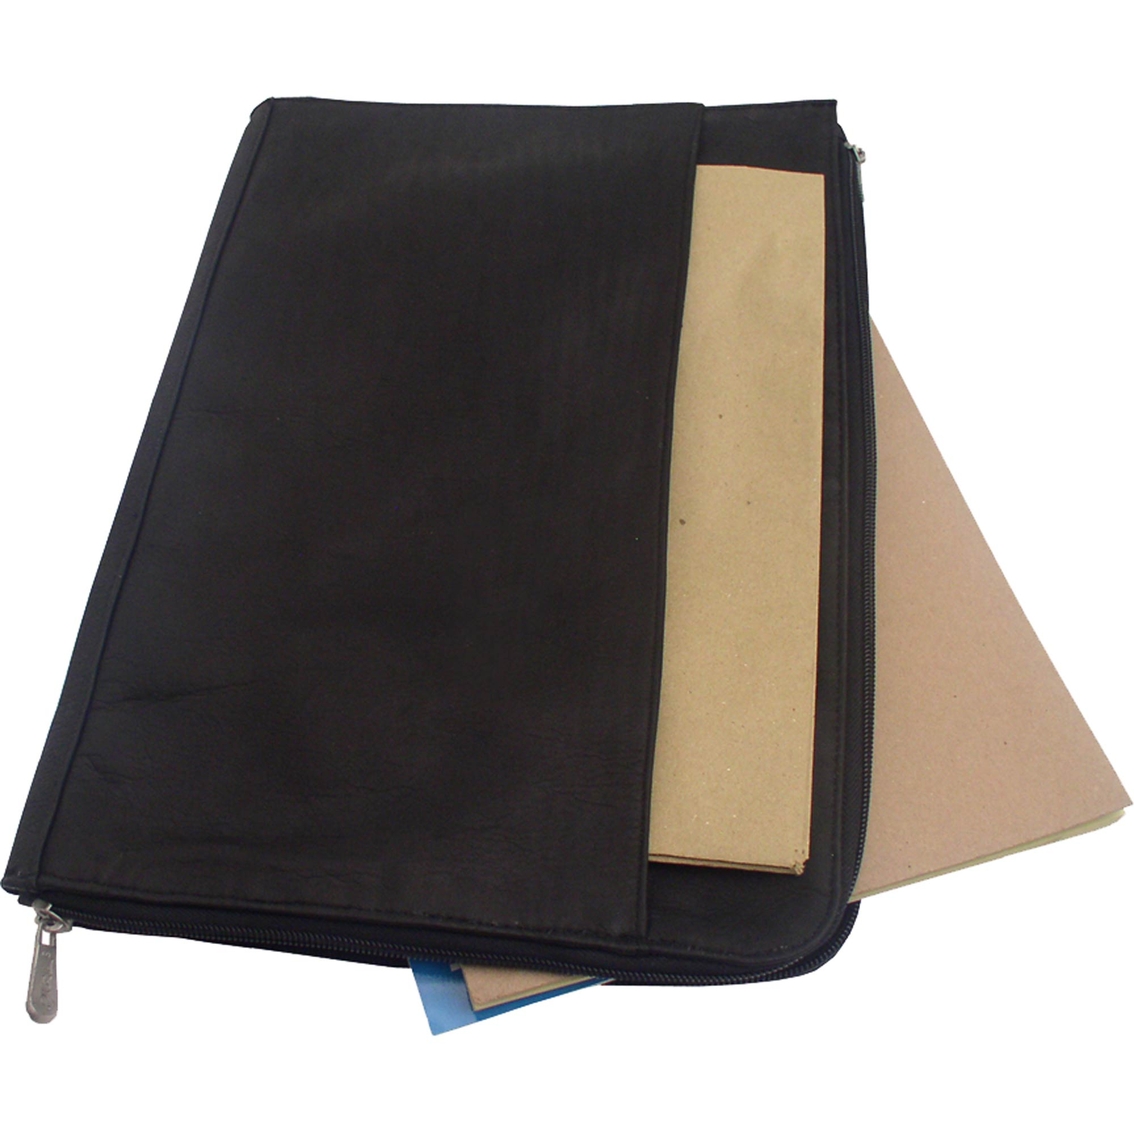 Piel Leather Zip Around Envelope - Image 2 of 2